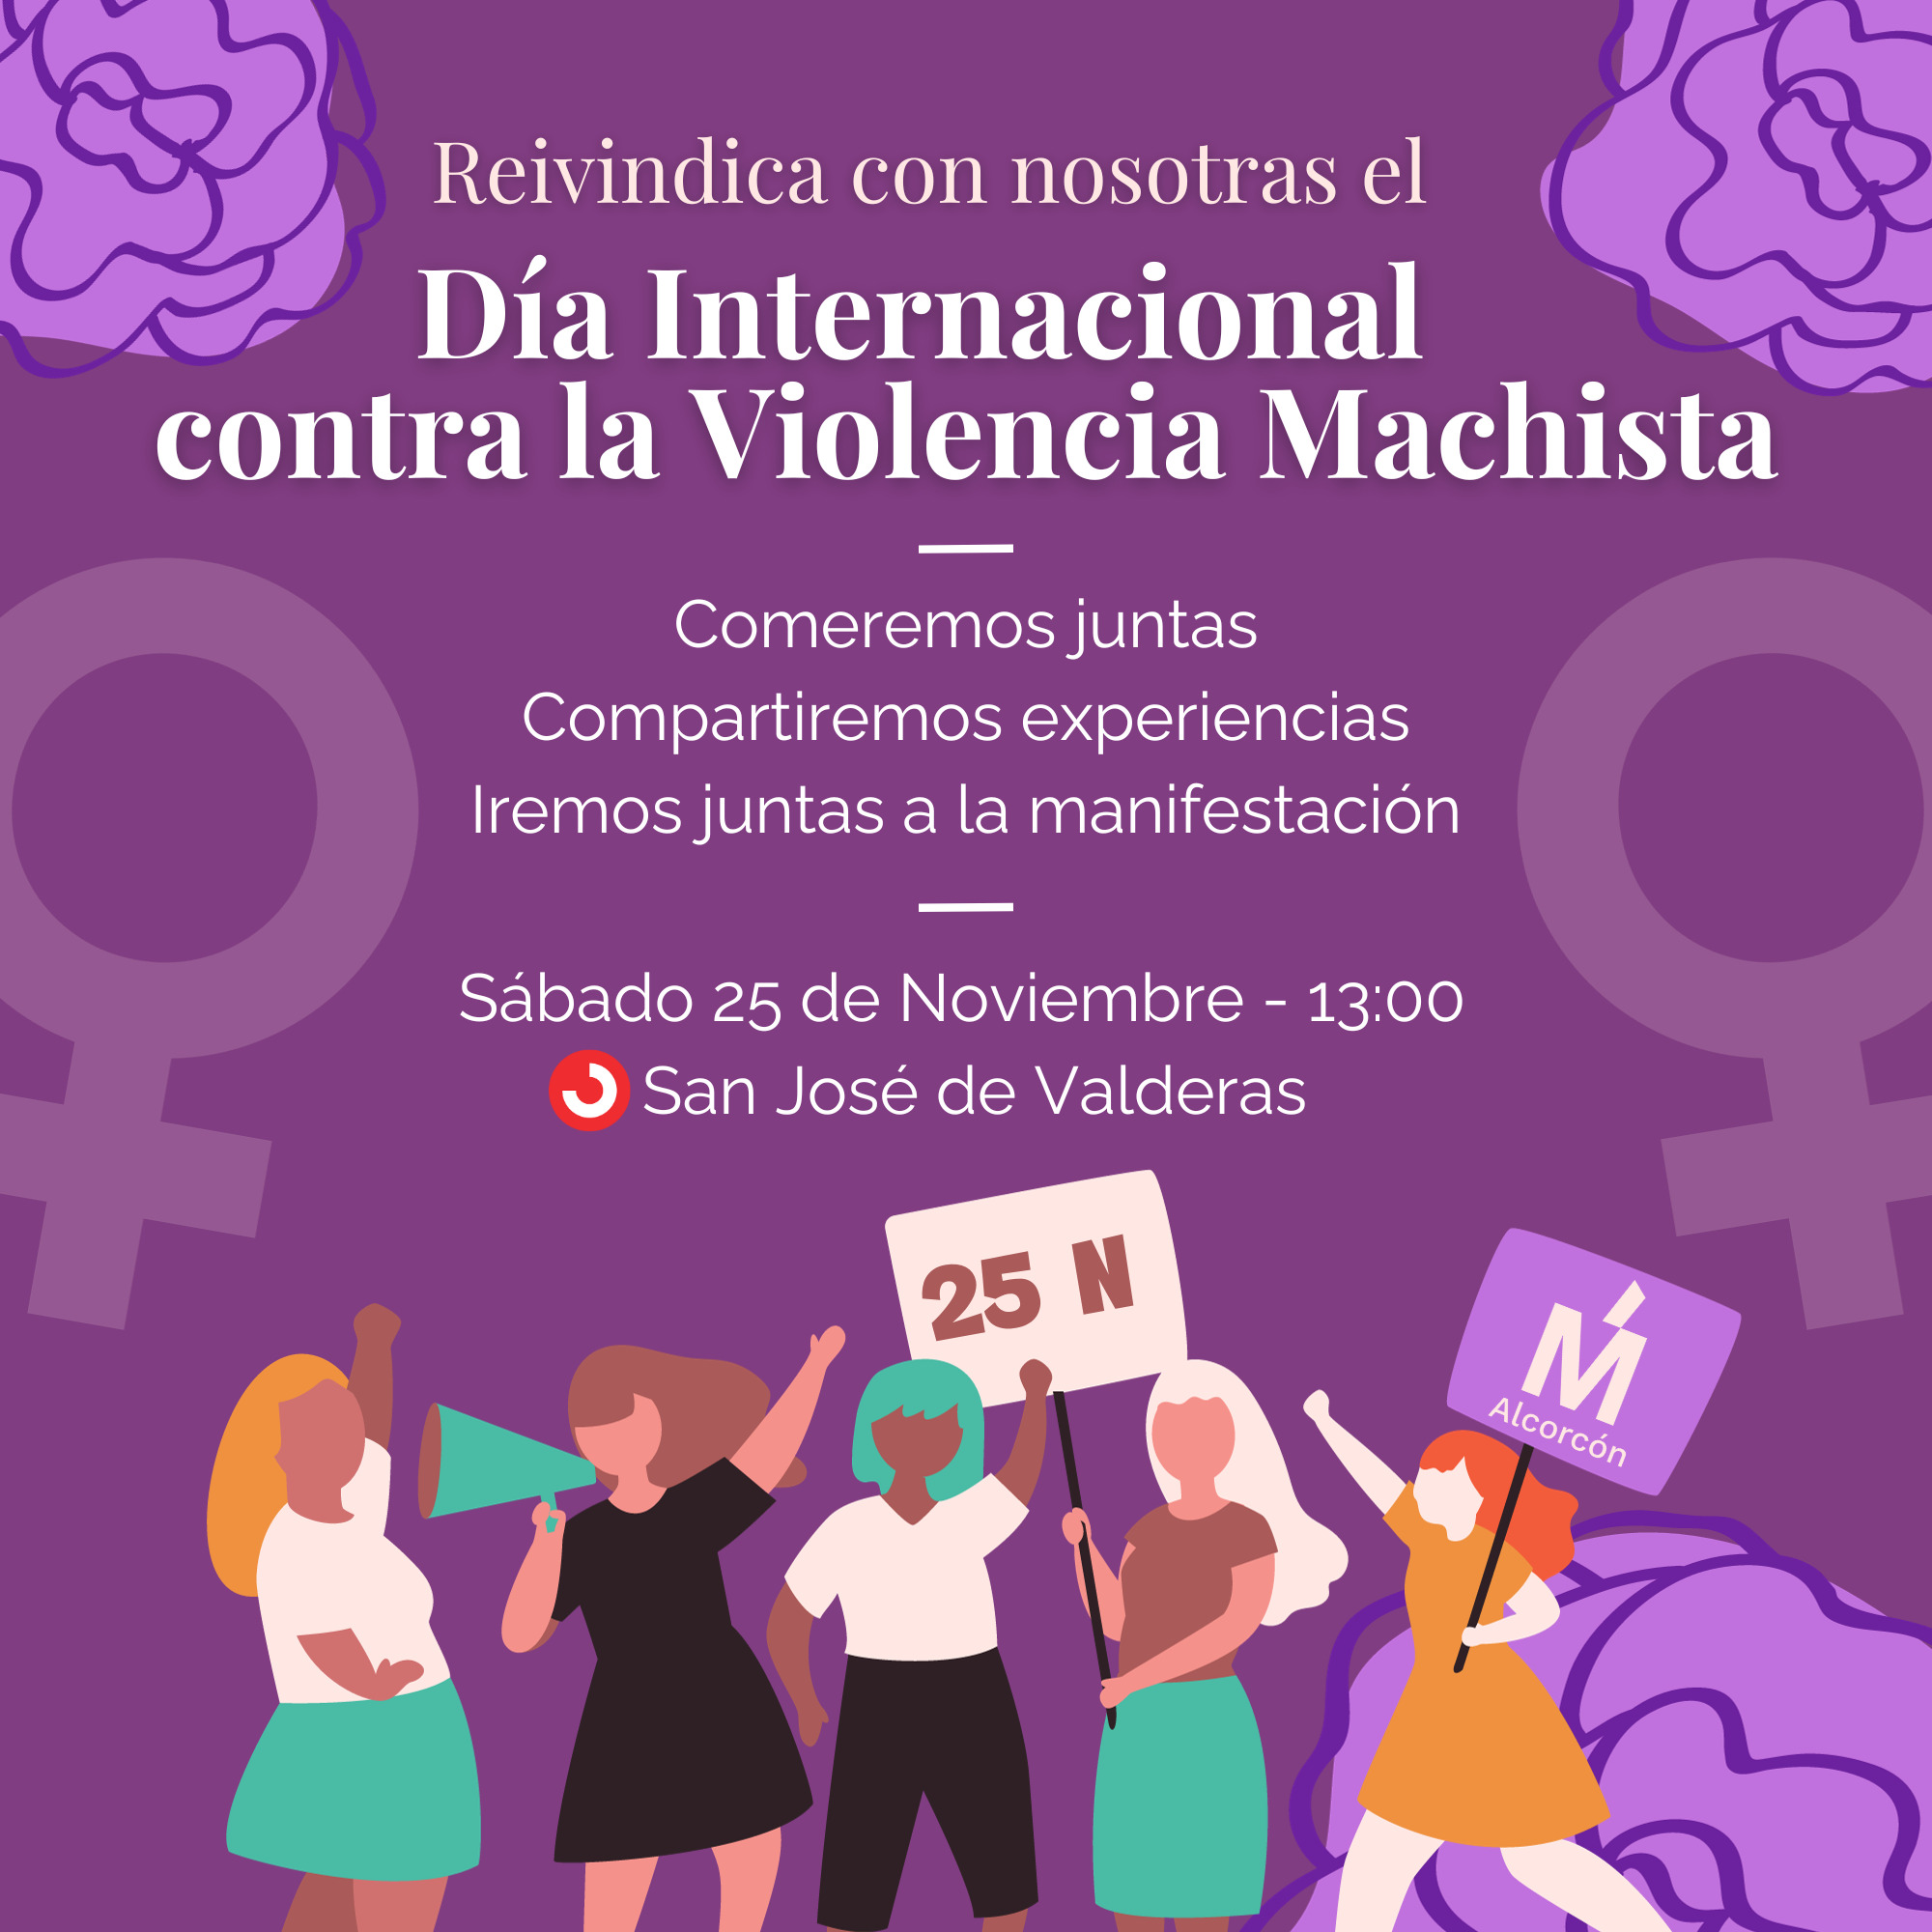 Más Madrid Alcorcón organiza una convocatoria por el Día Internacional para la Eliminación de la Violencia de Género